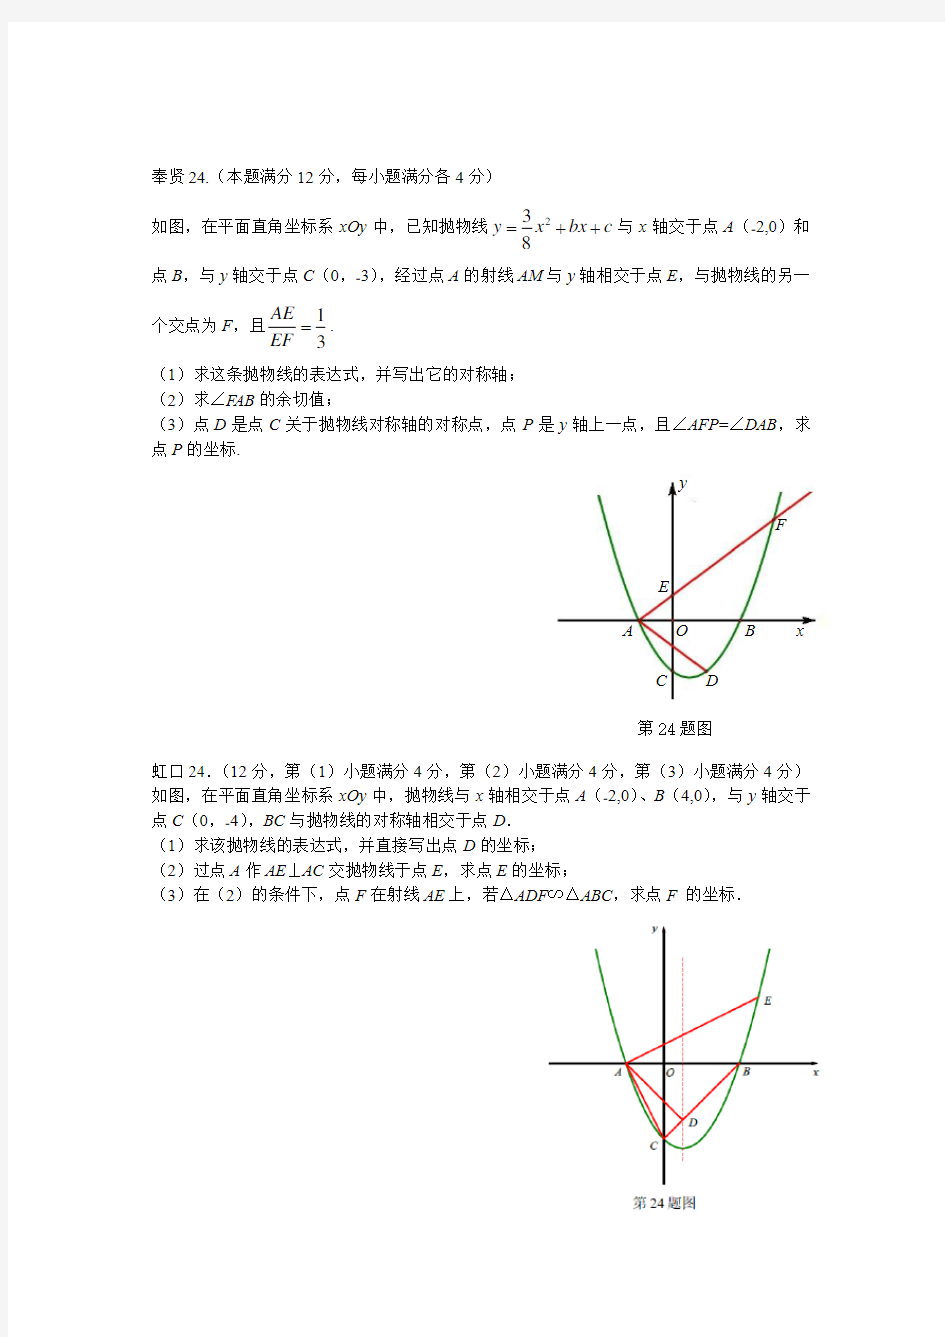 完整word版,上海2018初三数学一模各区压轴第24题二次函数